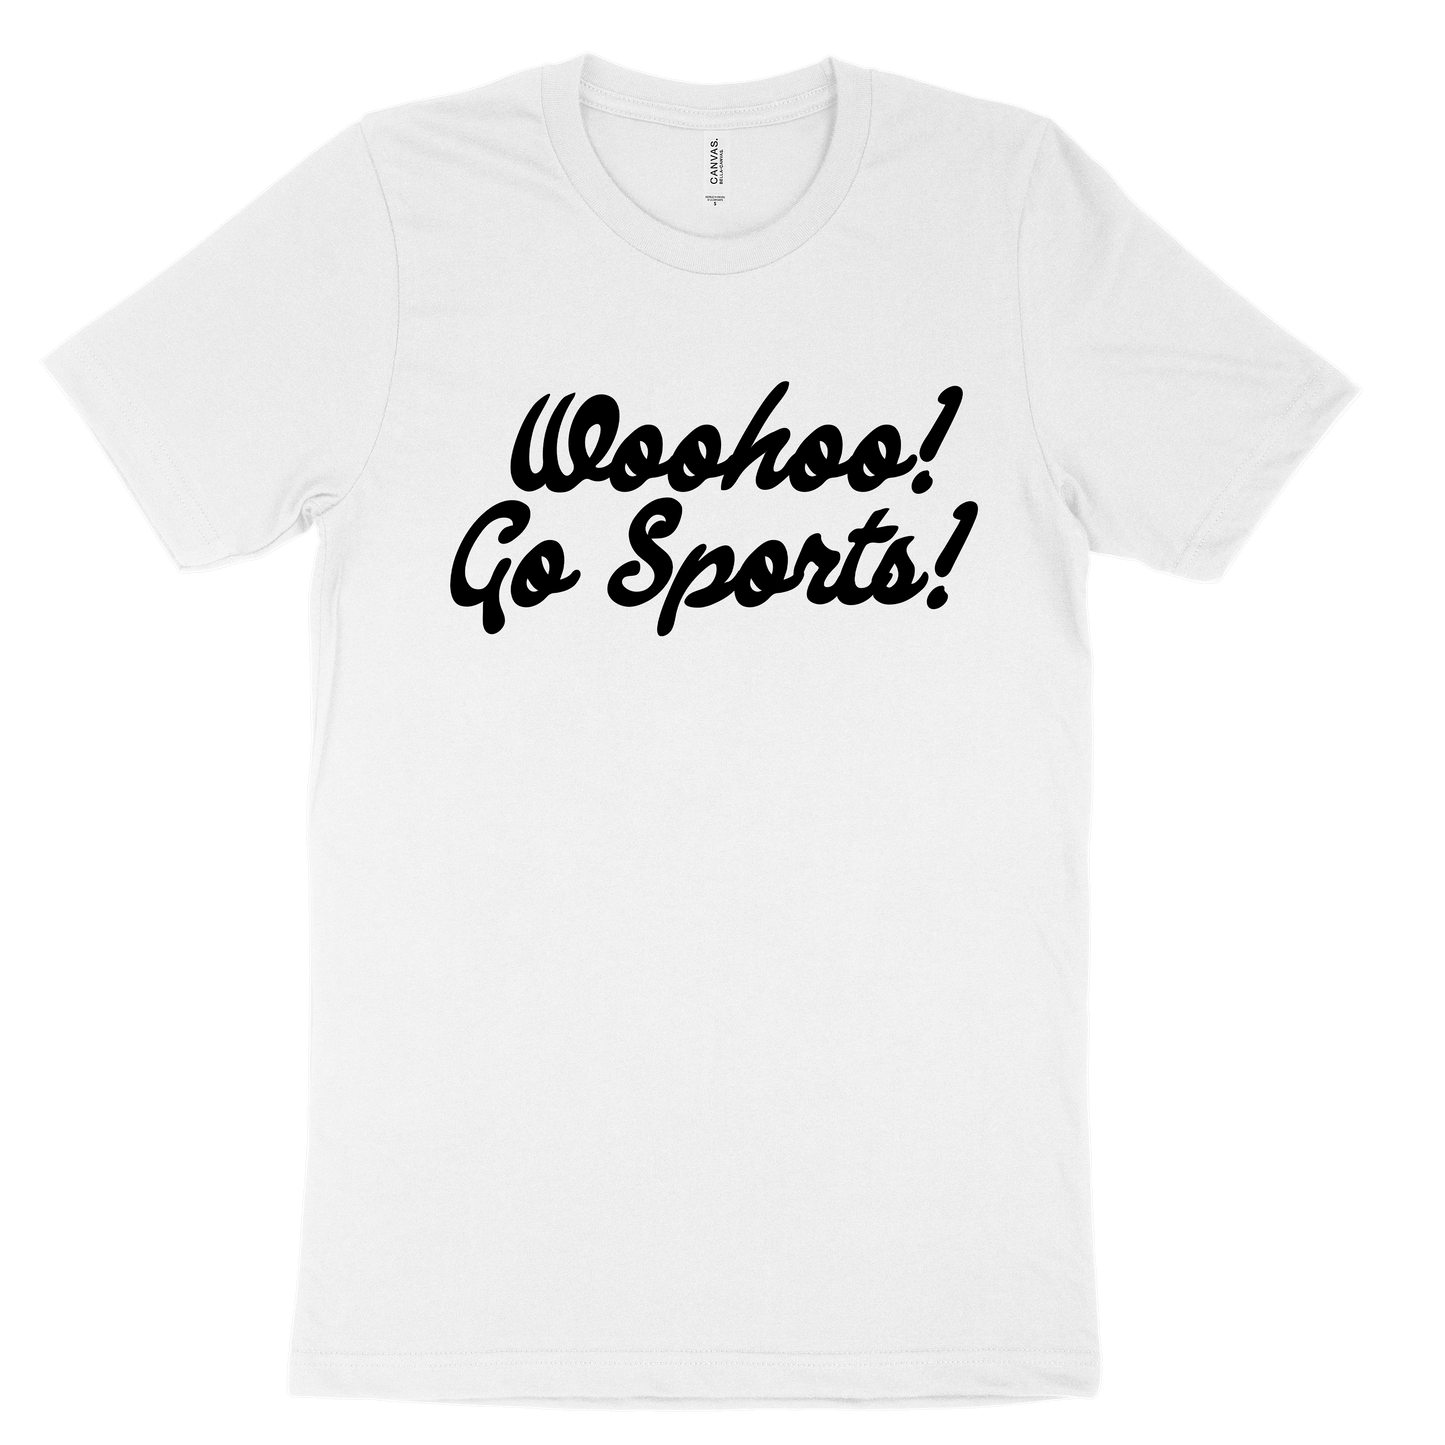 Woohoo! Go Sports! Tee - White